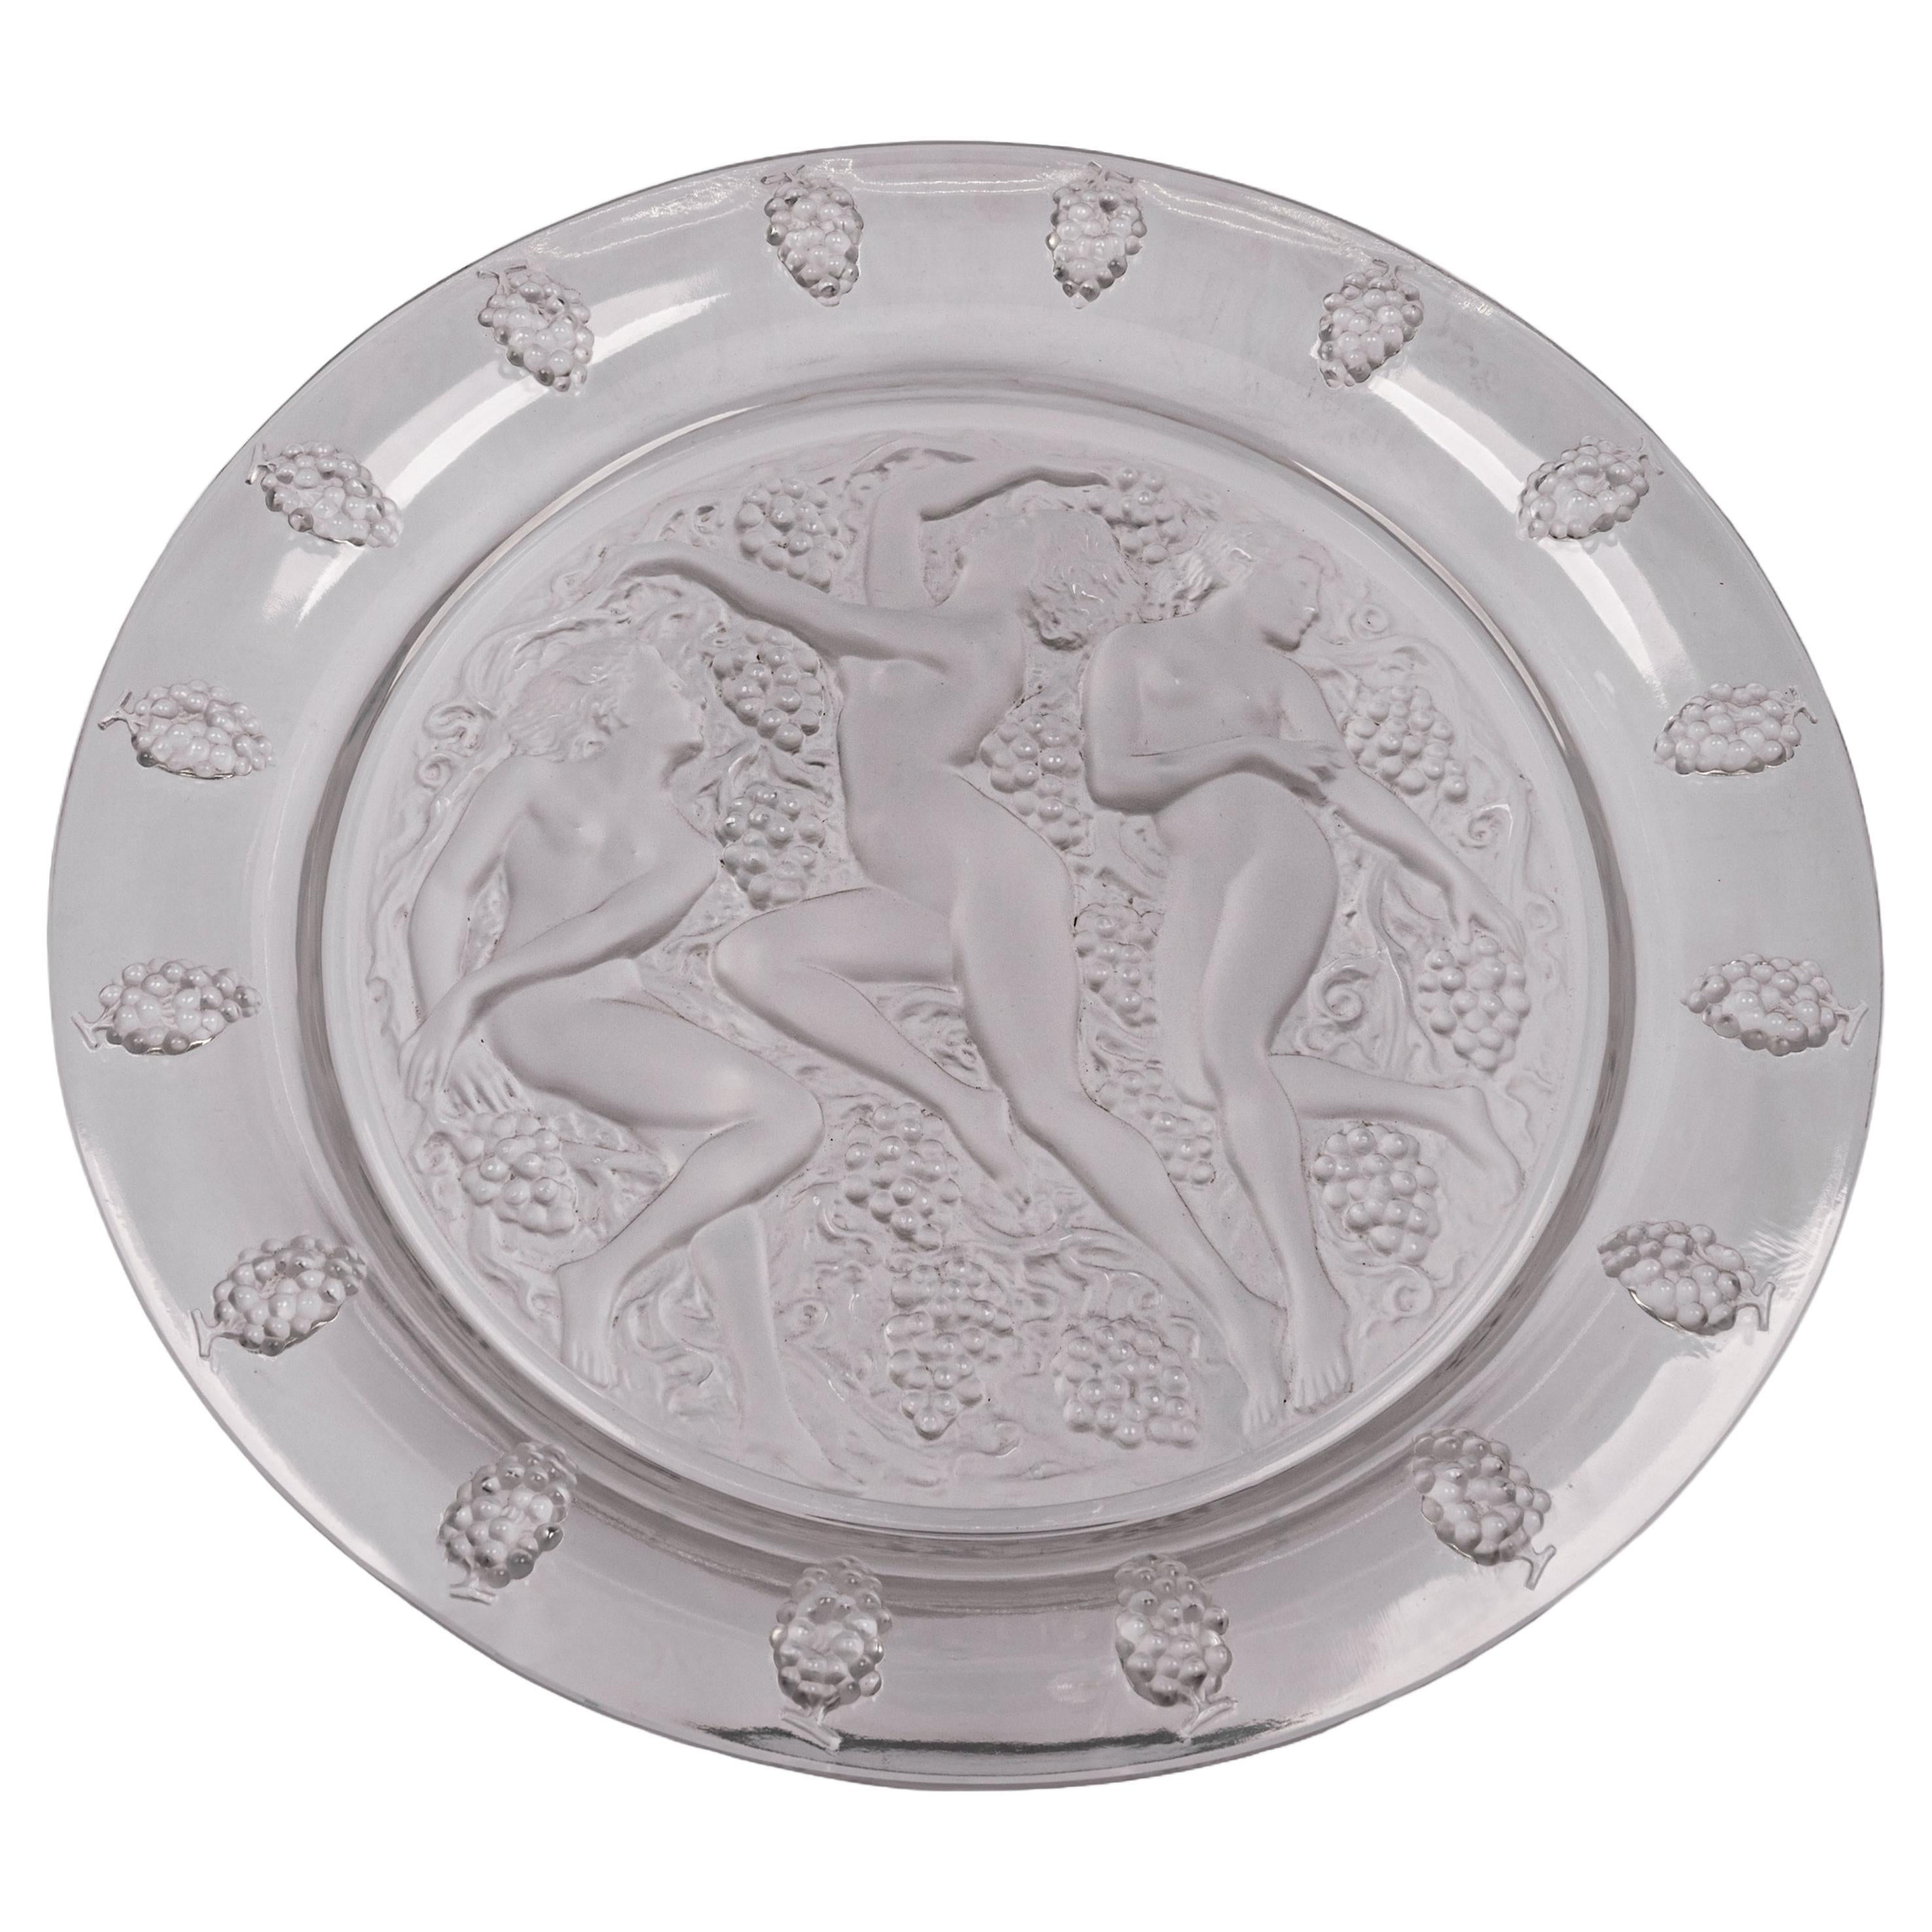  Large Art Deco Rene Lalique Glass Cote d'Or Bachantes Charger Bowl Platter 1943 For Sale 1